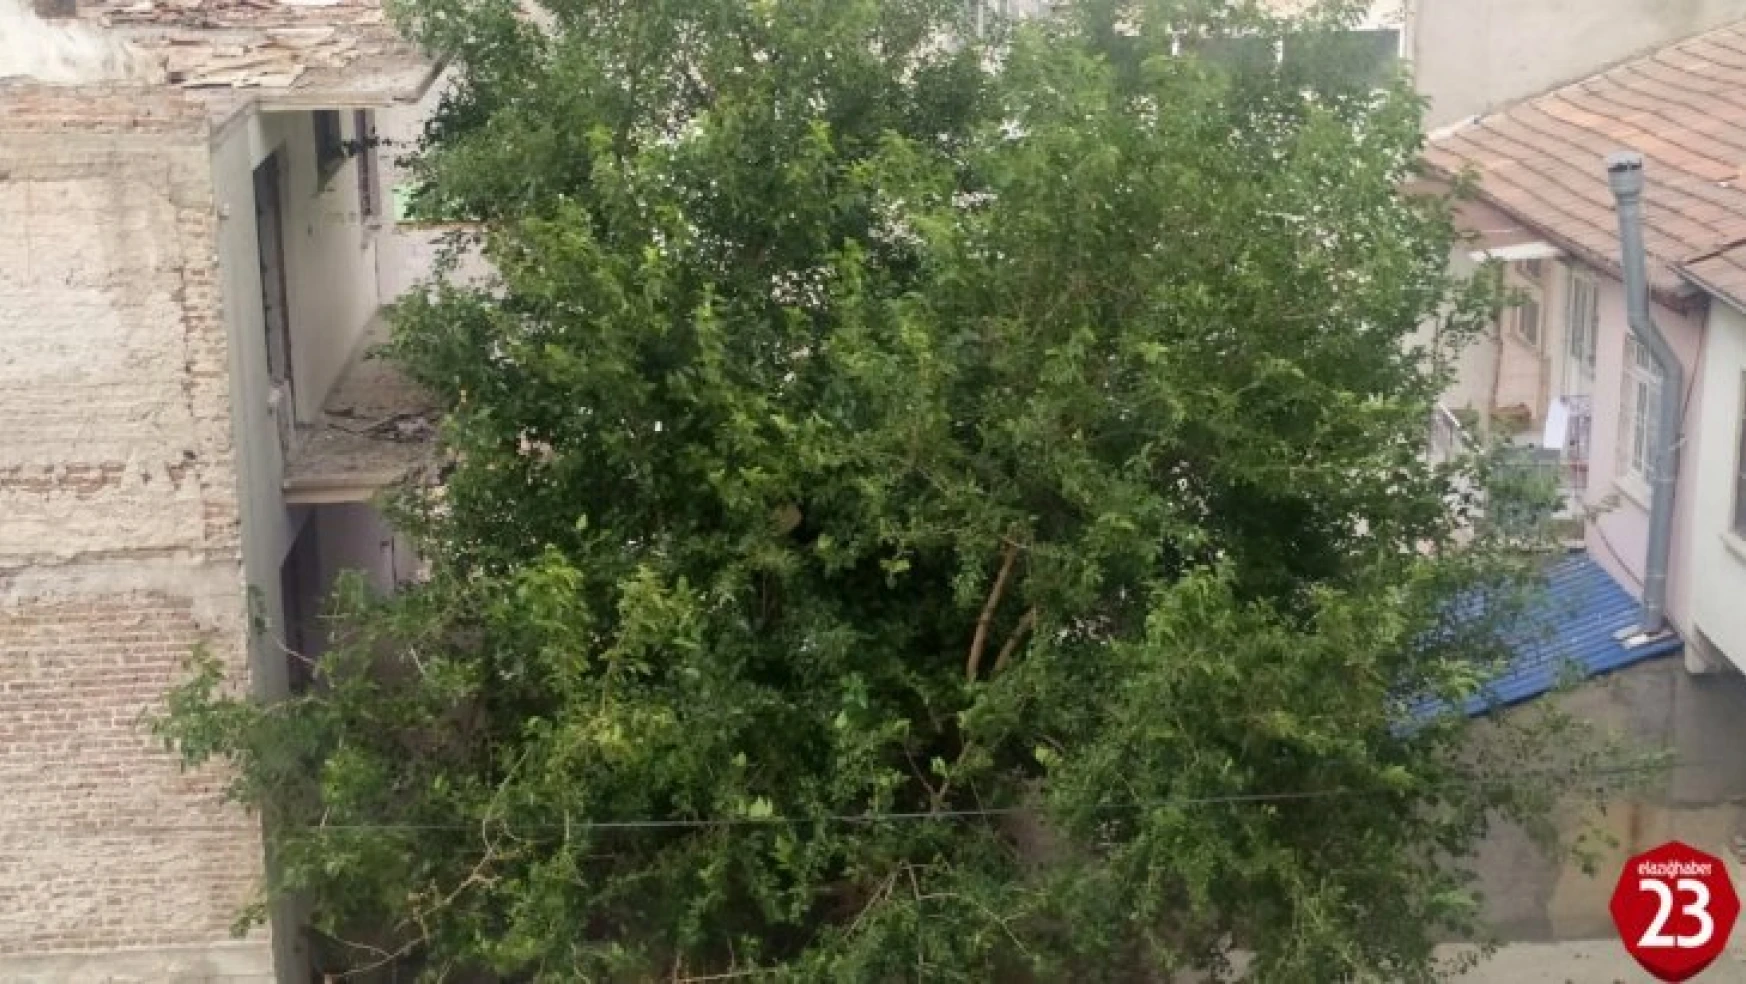 Elazığ'da Şiddetli Rüzgar Etkili Oldu, Ağaçların Dalları Kırıldı